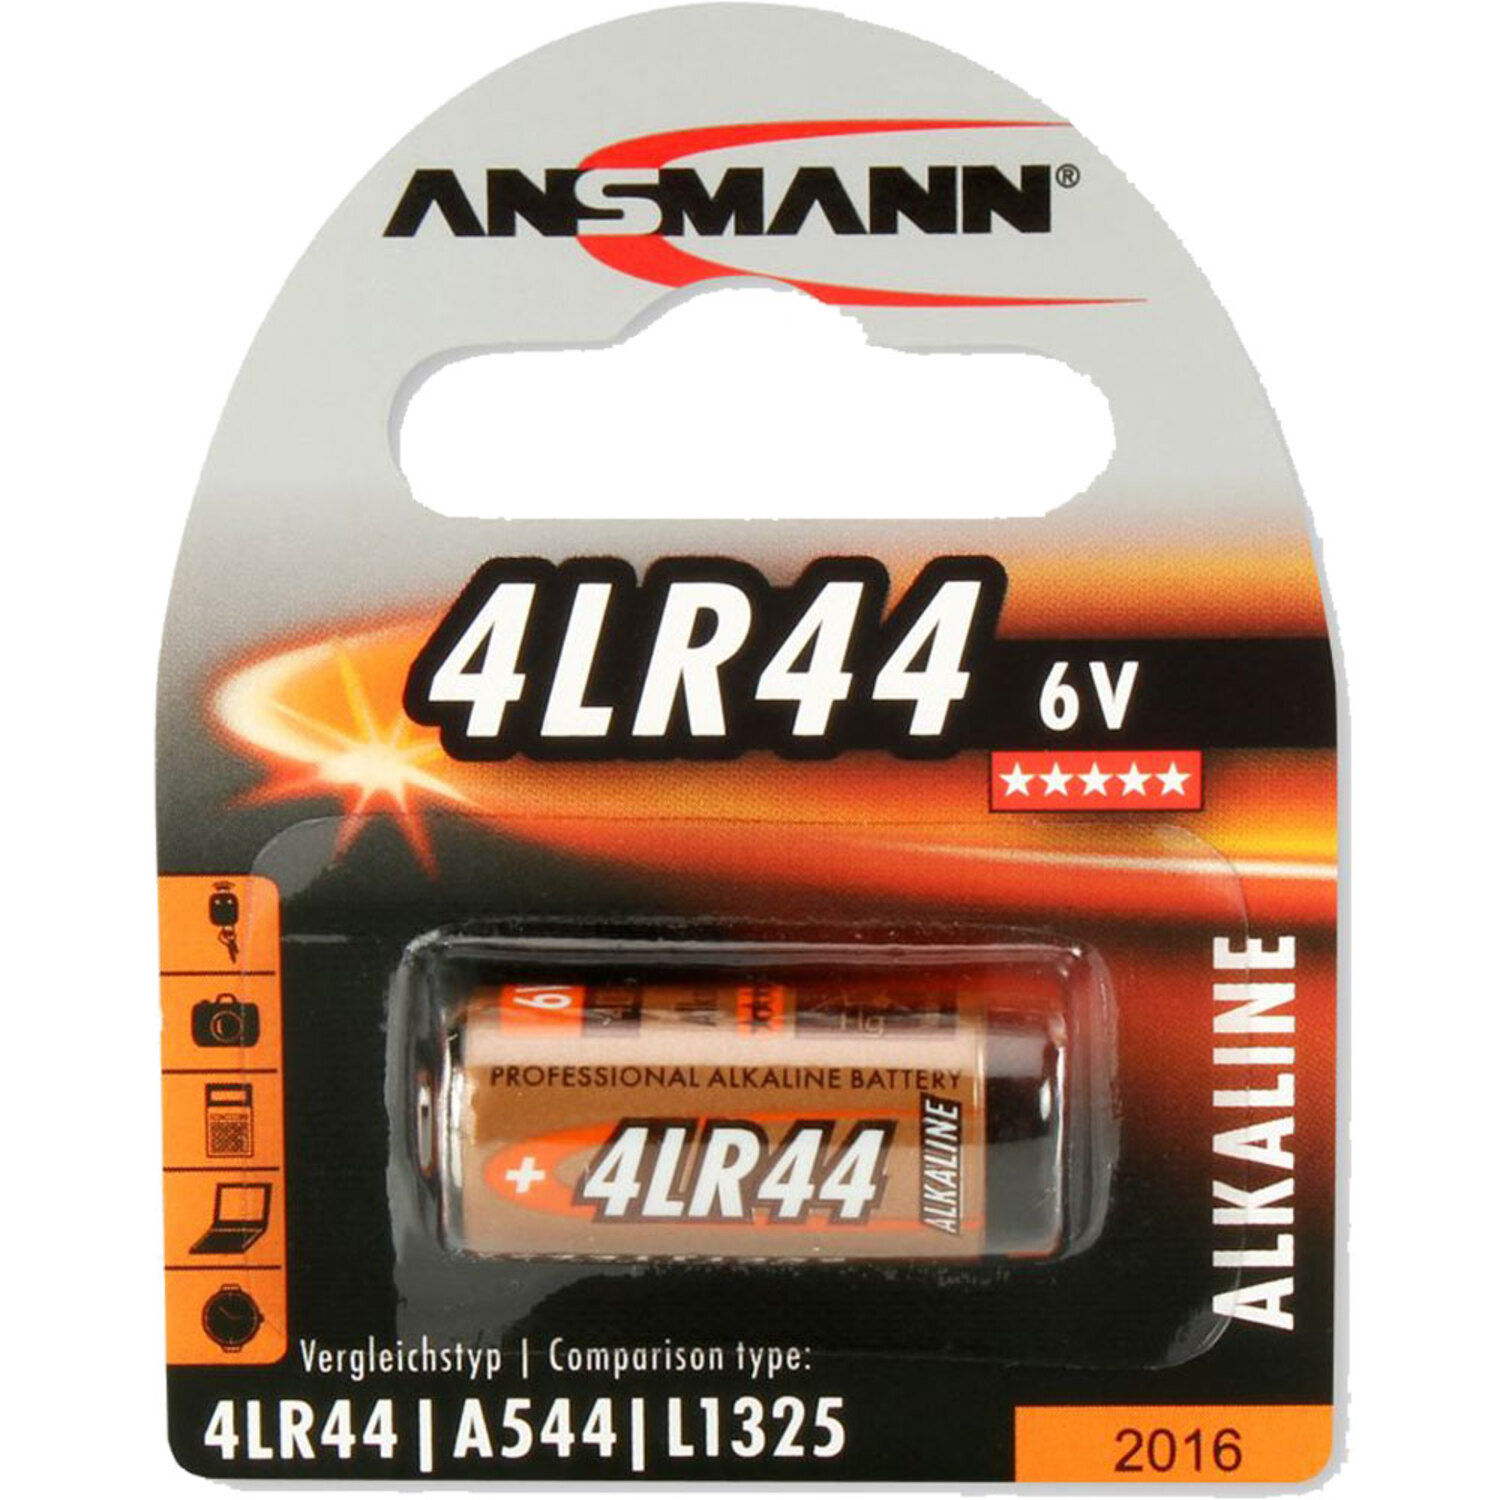 ANSMANN ANSMANN 4LR44 Stück 1 Batterien, 1510-0009 Volt Energie / Batterien Batterie Alkaline 6V / Licht Alkaline, 6 Strom